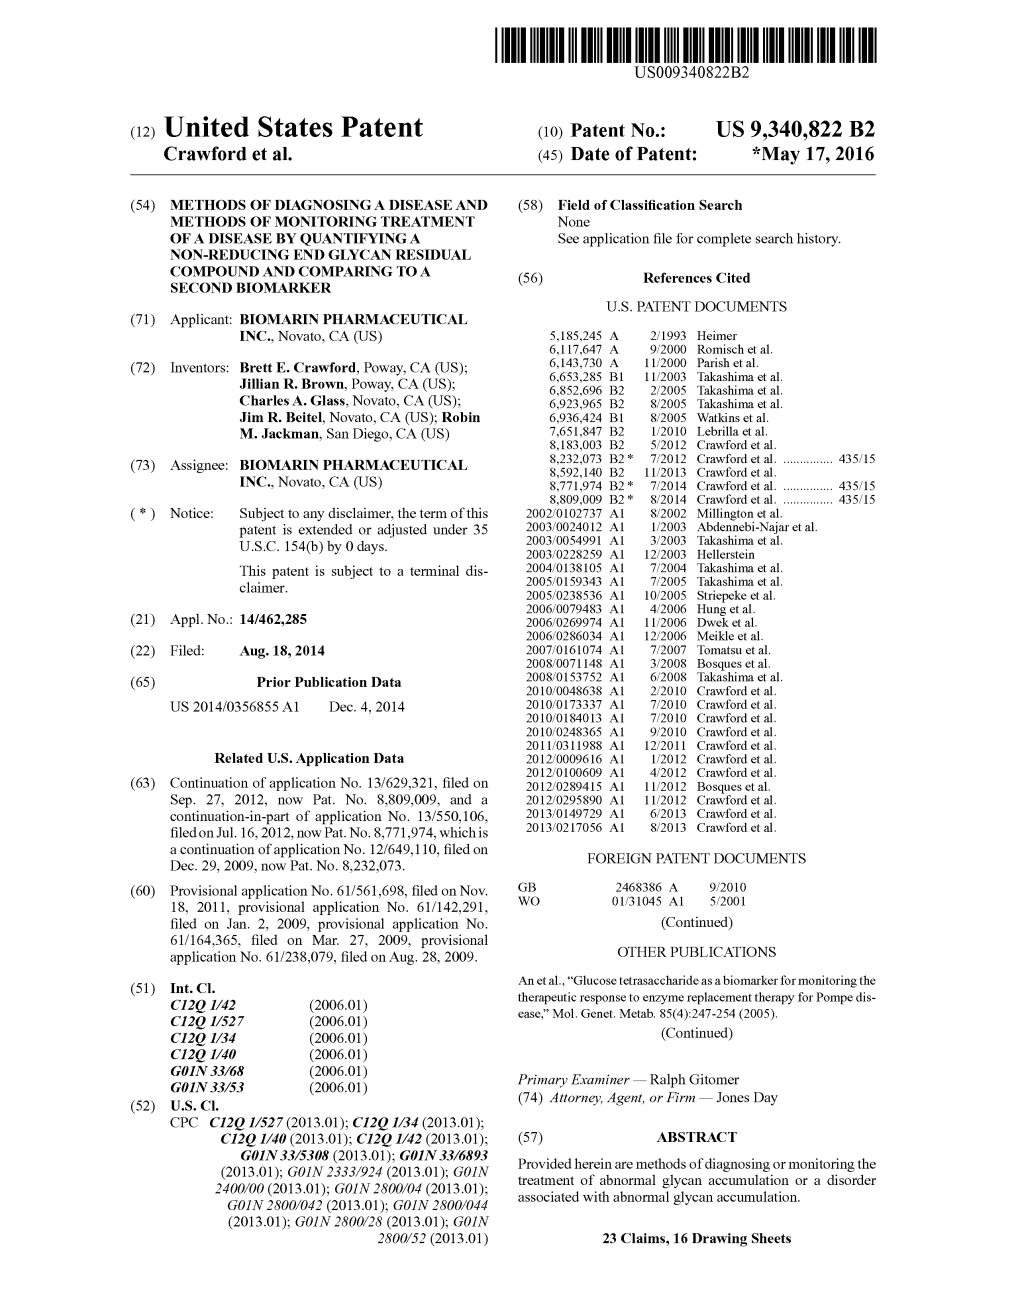 (12) United States Patent (10) Patent No.: US 9,340,822 B2 Crawford Et Al